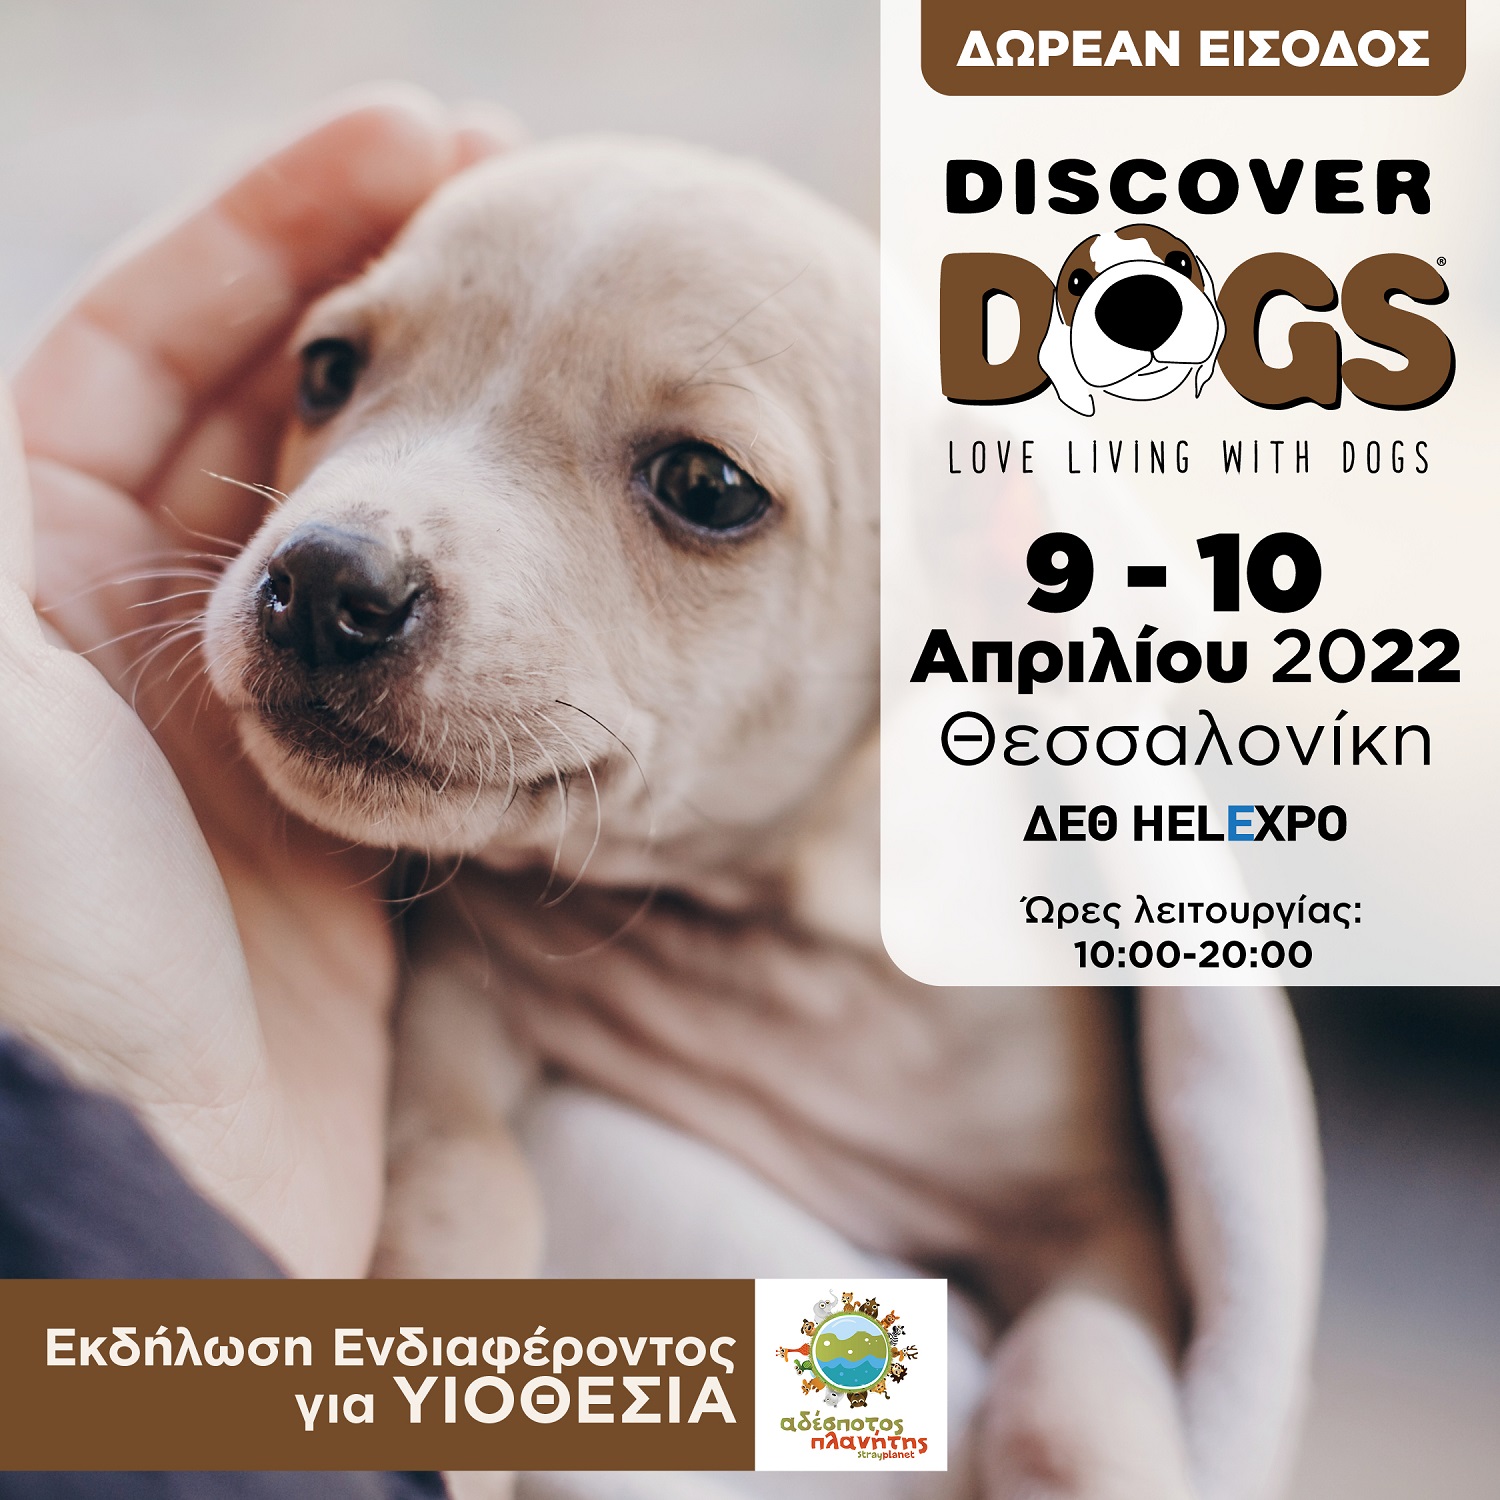 discover-dogs-ekdilosi-endiaferontos-gia-yiothesia.jpg